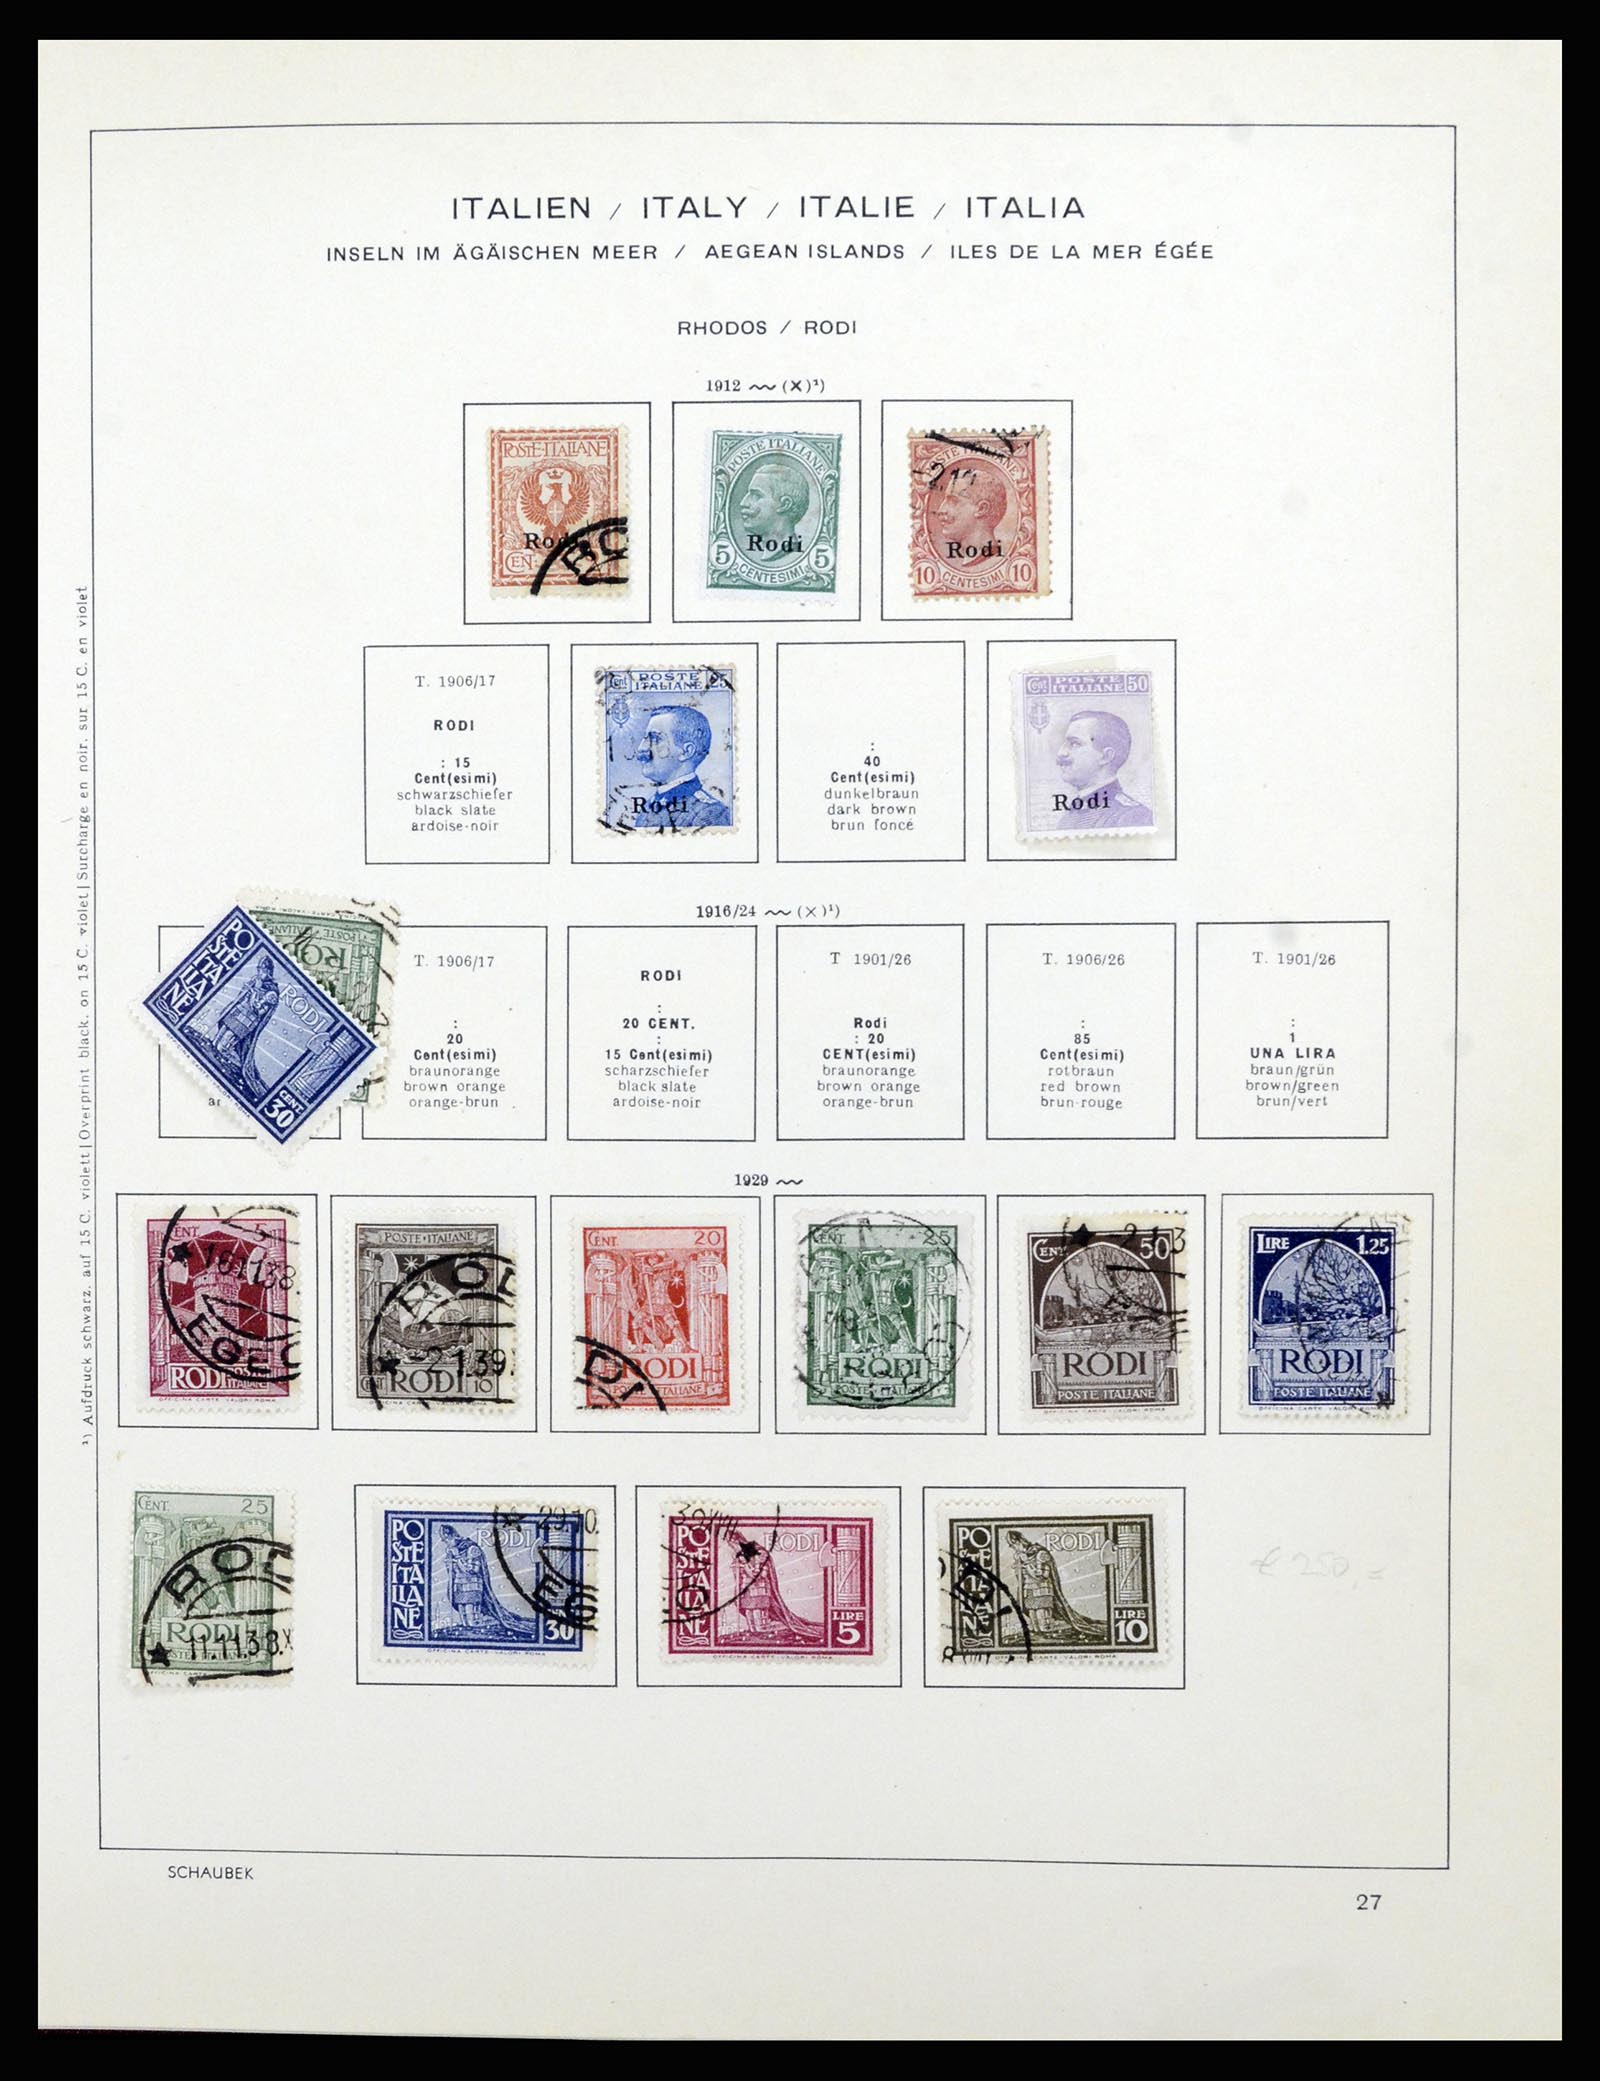 36576 034 - Stamp collection 36576 Italiaanse gebieden en koloniën 1874-1954.